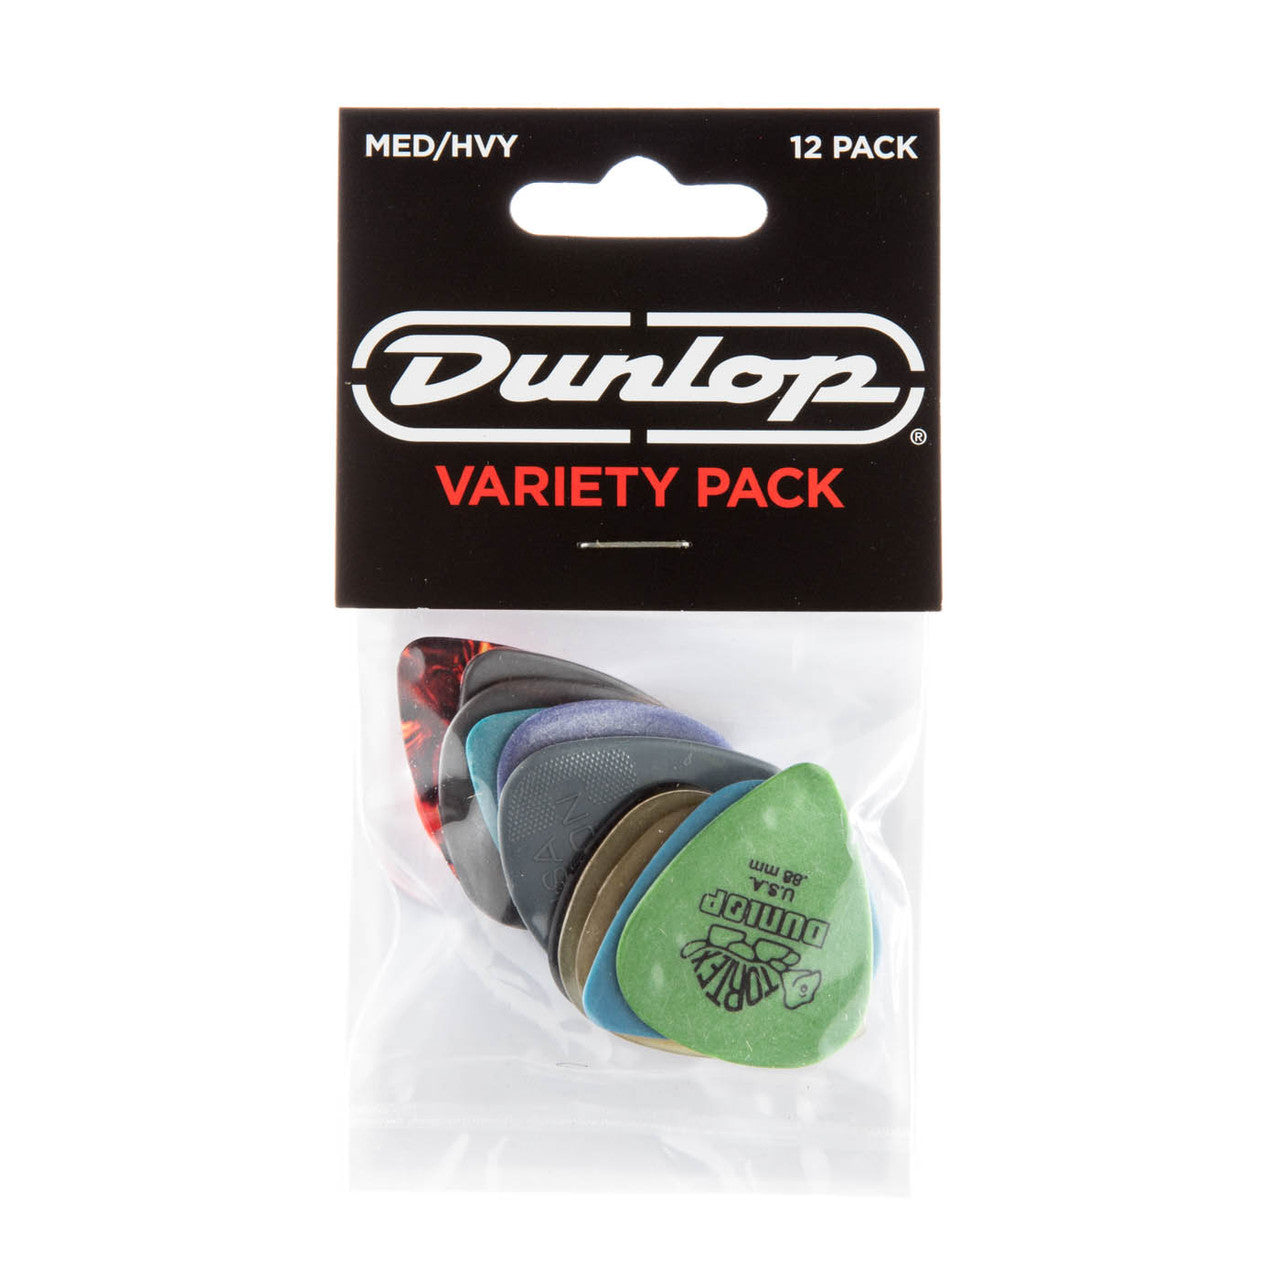 Dunlop Picks Variety Pack - Med/Hvy - 12 Pack